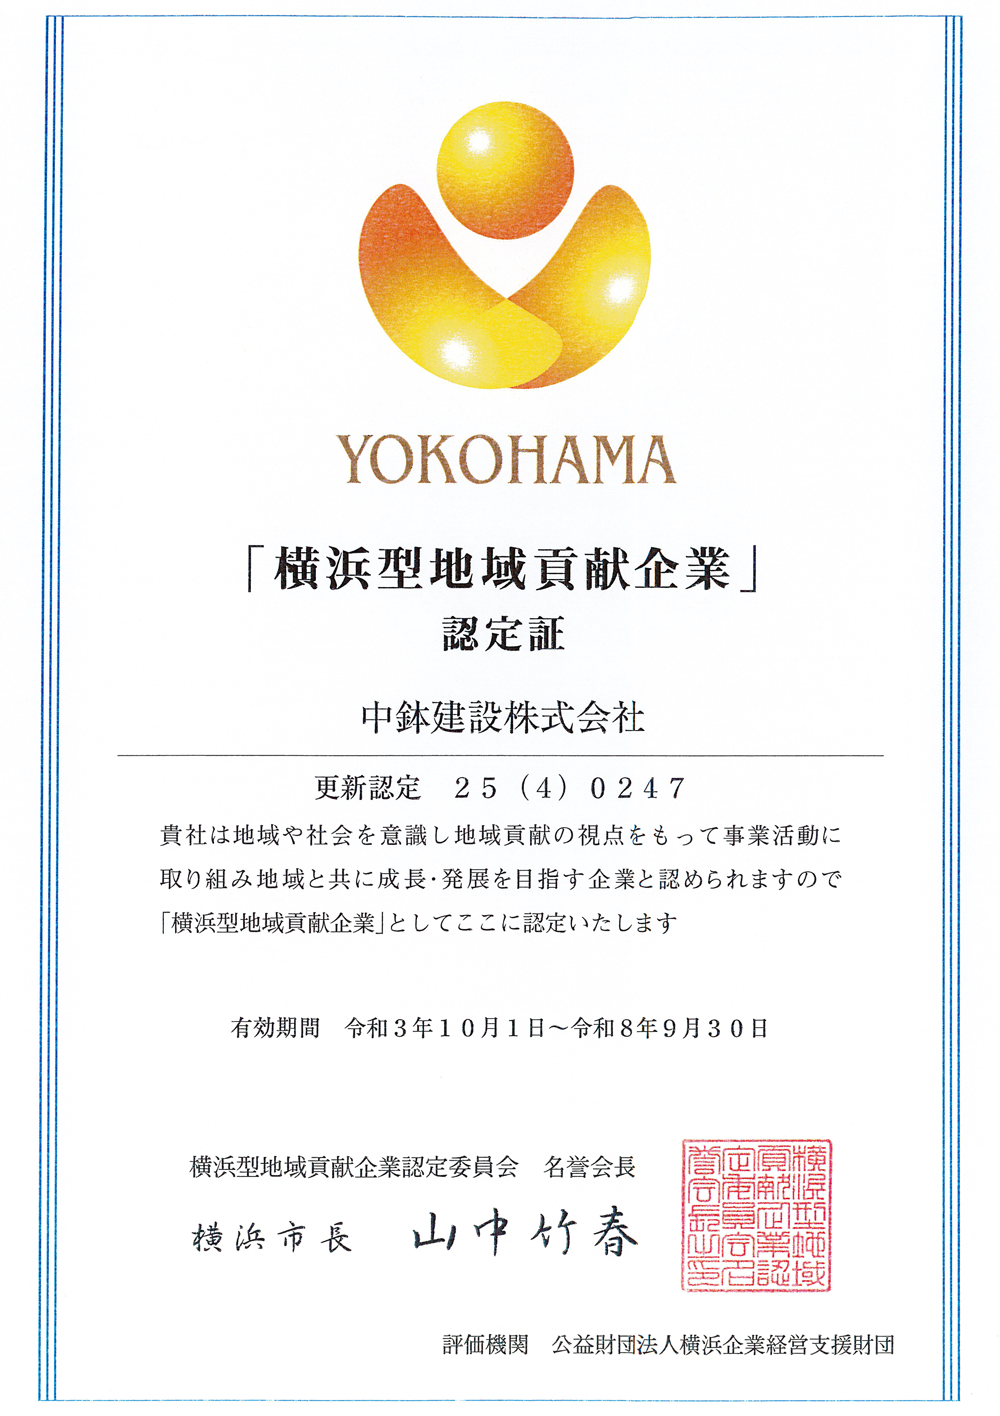 「横浜型地域貢献企業」として認定を受けました